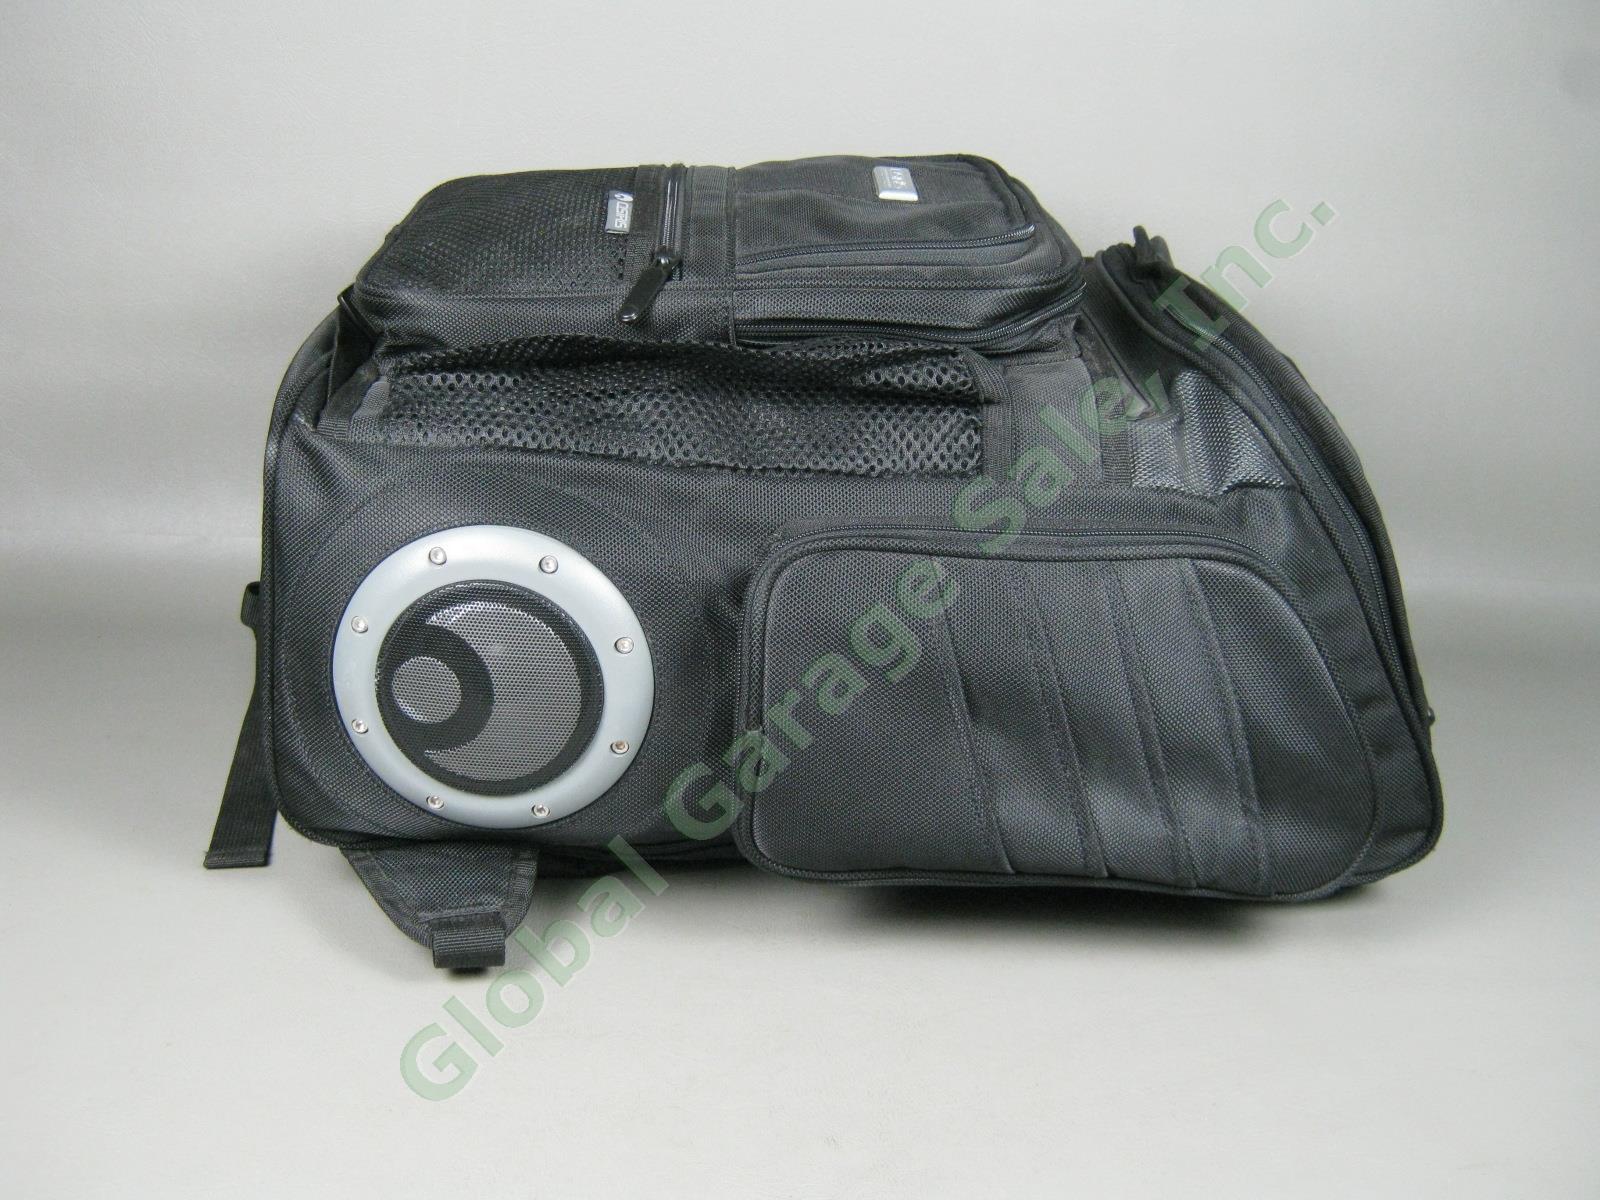 NOS Osiris G-Bag Metatron 2100 Backpack Skate Pack w/ Stereo Speakers + Amp NR! 2